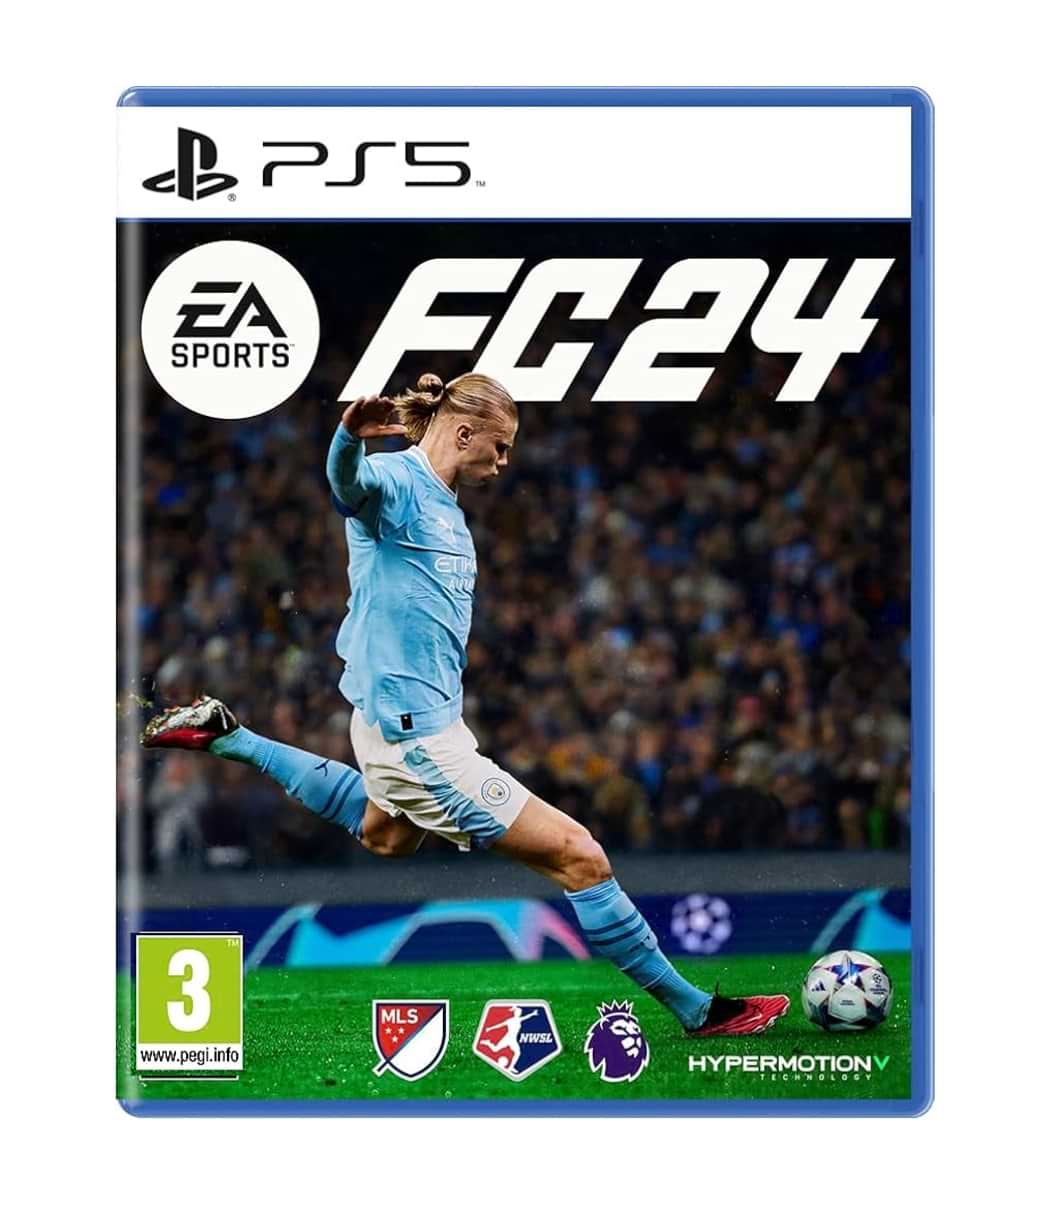 PS5 EA SPORTS FC 24 (FIFA 24) – Sosogames